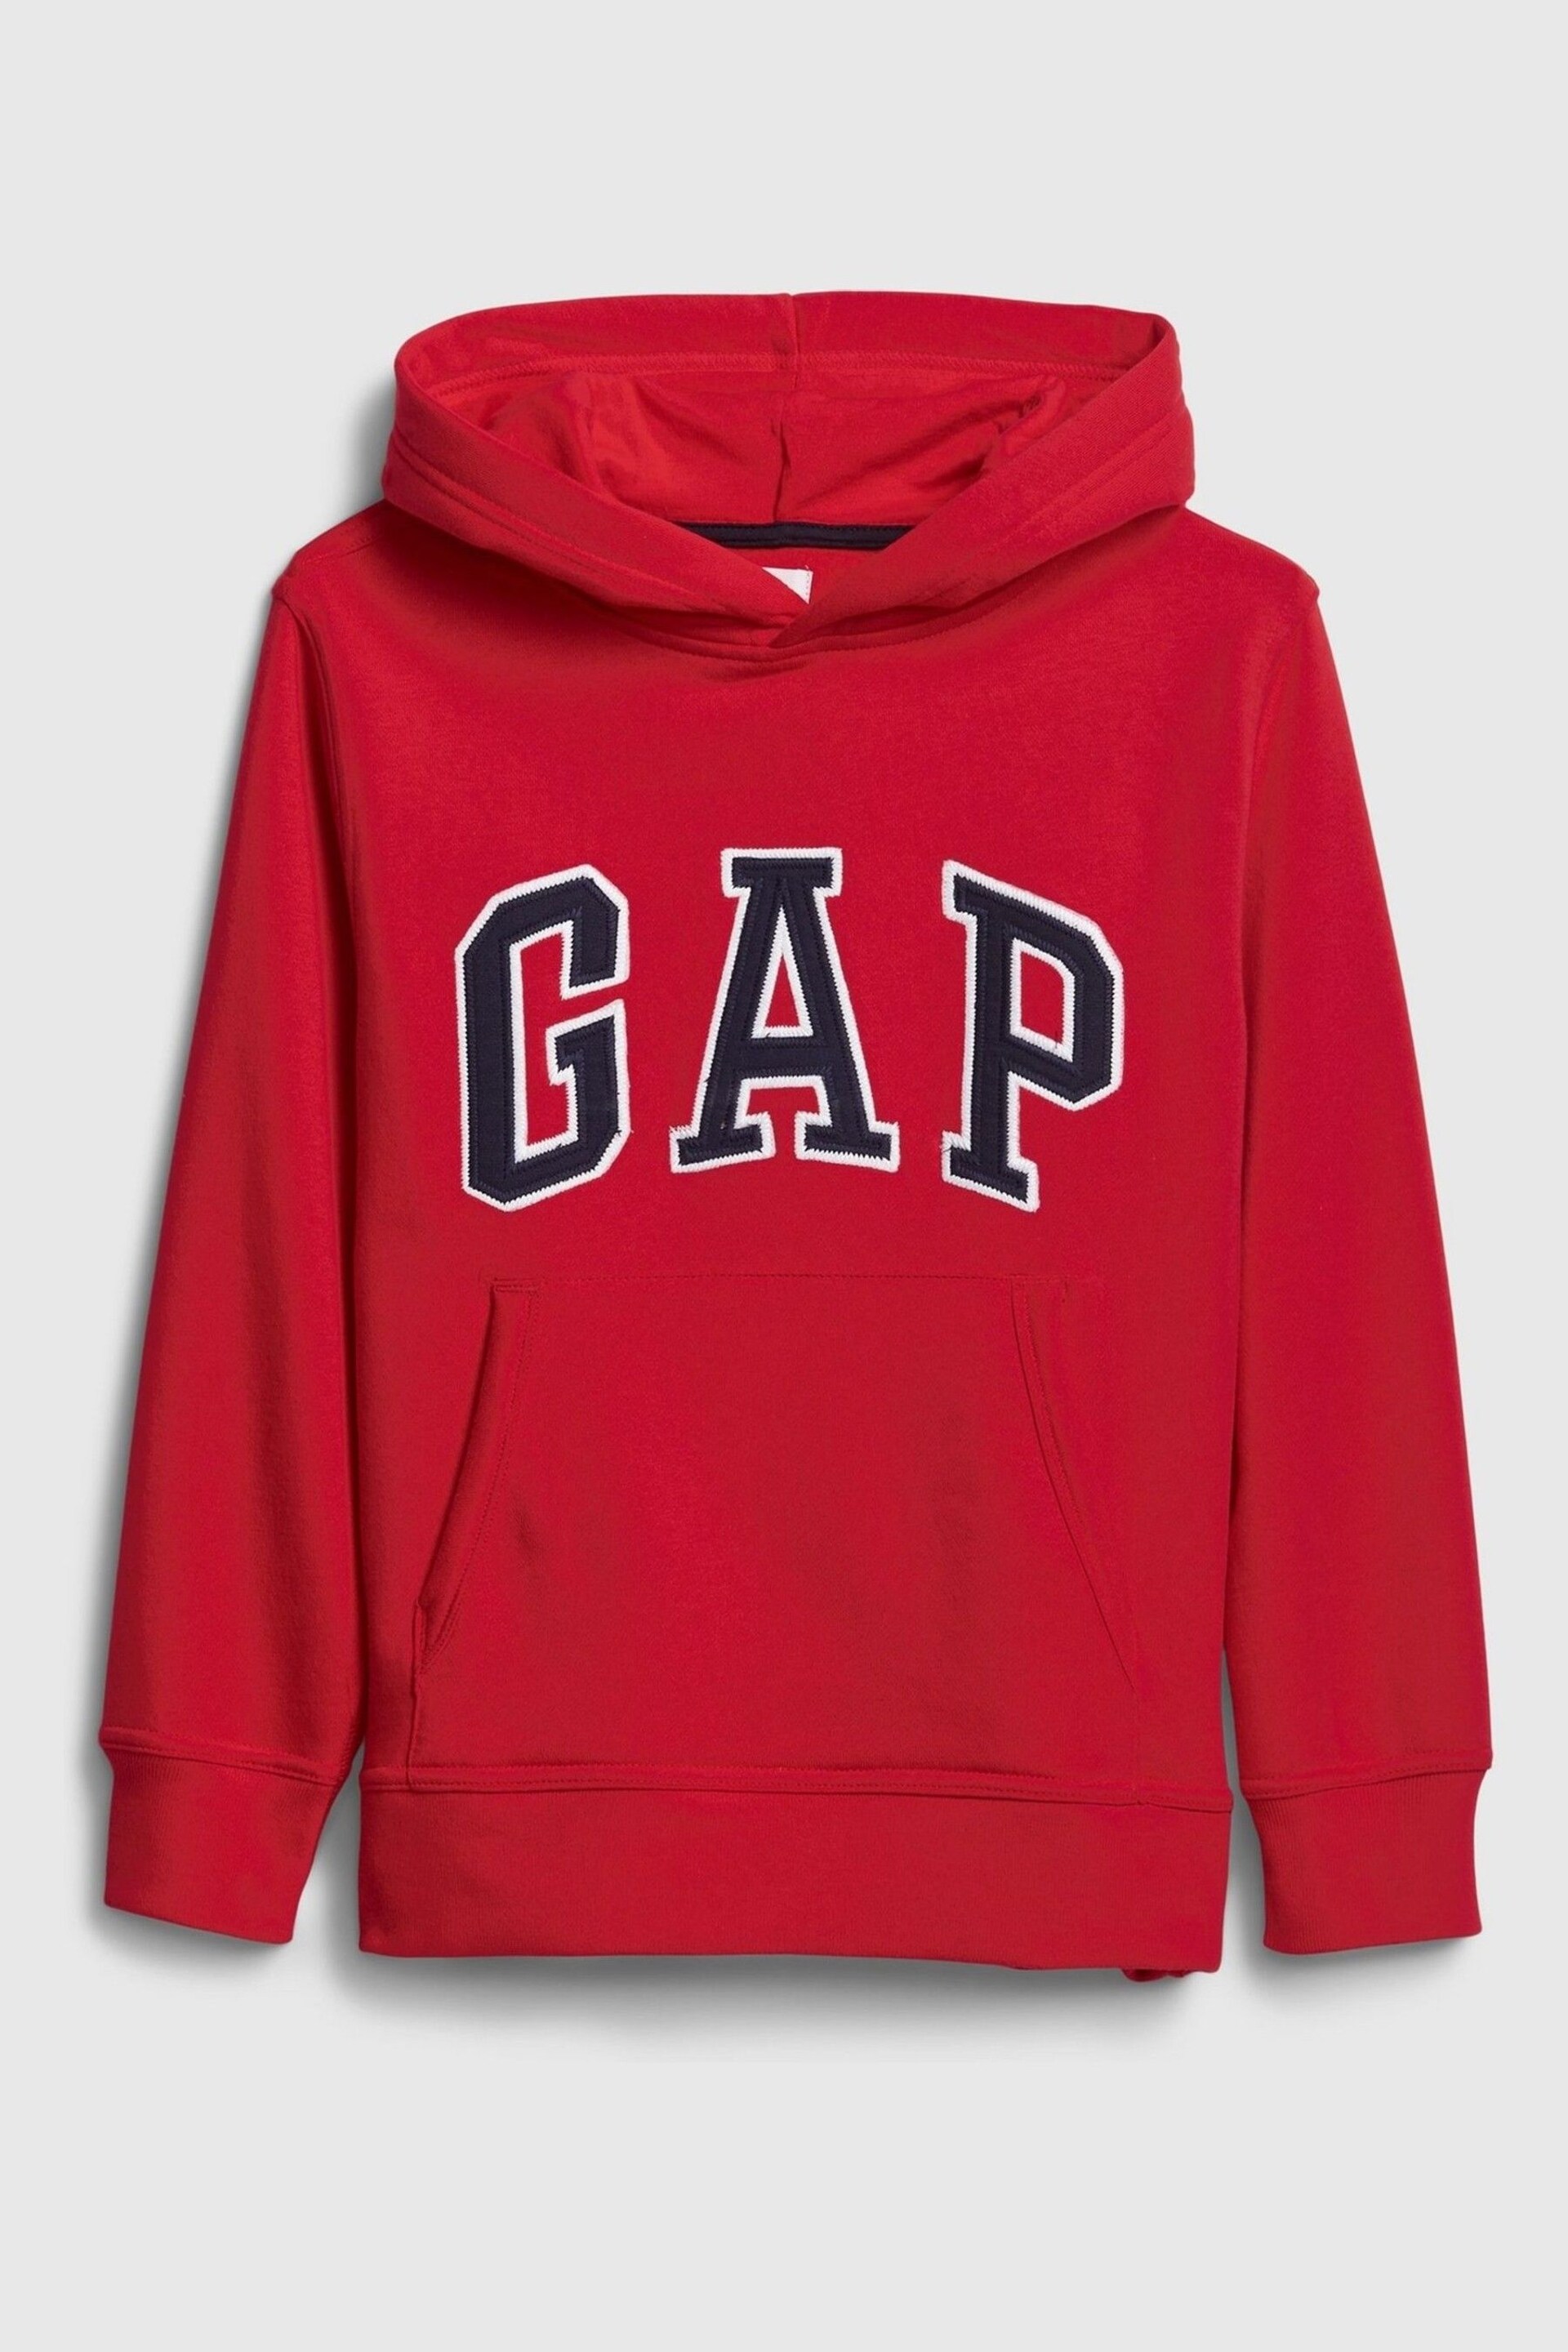 Gap Red Logo Hoodie - Image 1 of 2